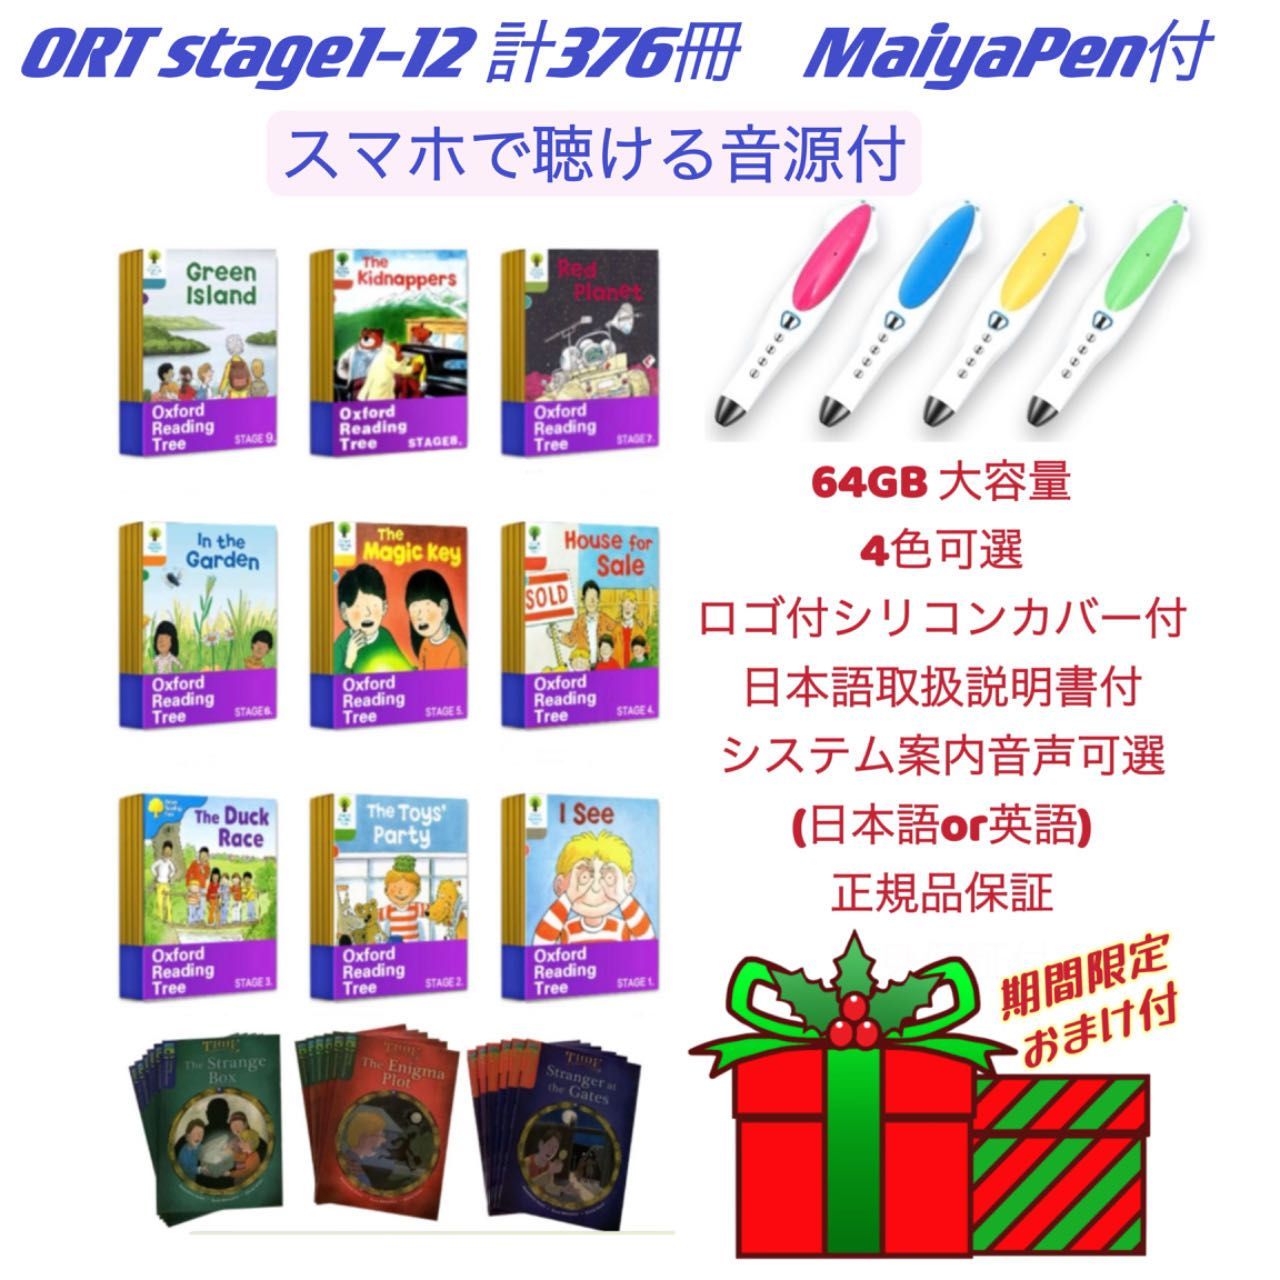 YouTube高品質ORT stage １-13 絵本376冊 ＆最高モデル64GBマイヤペン ...